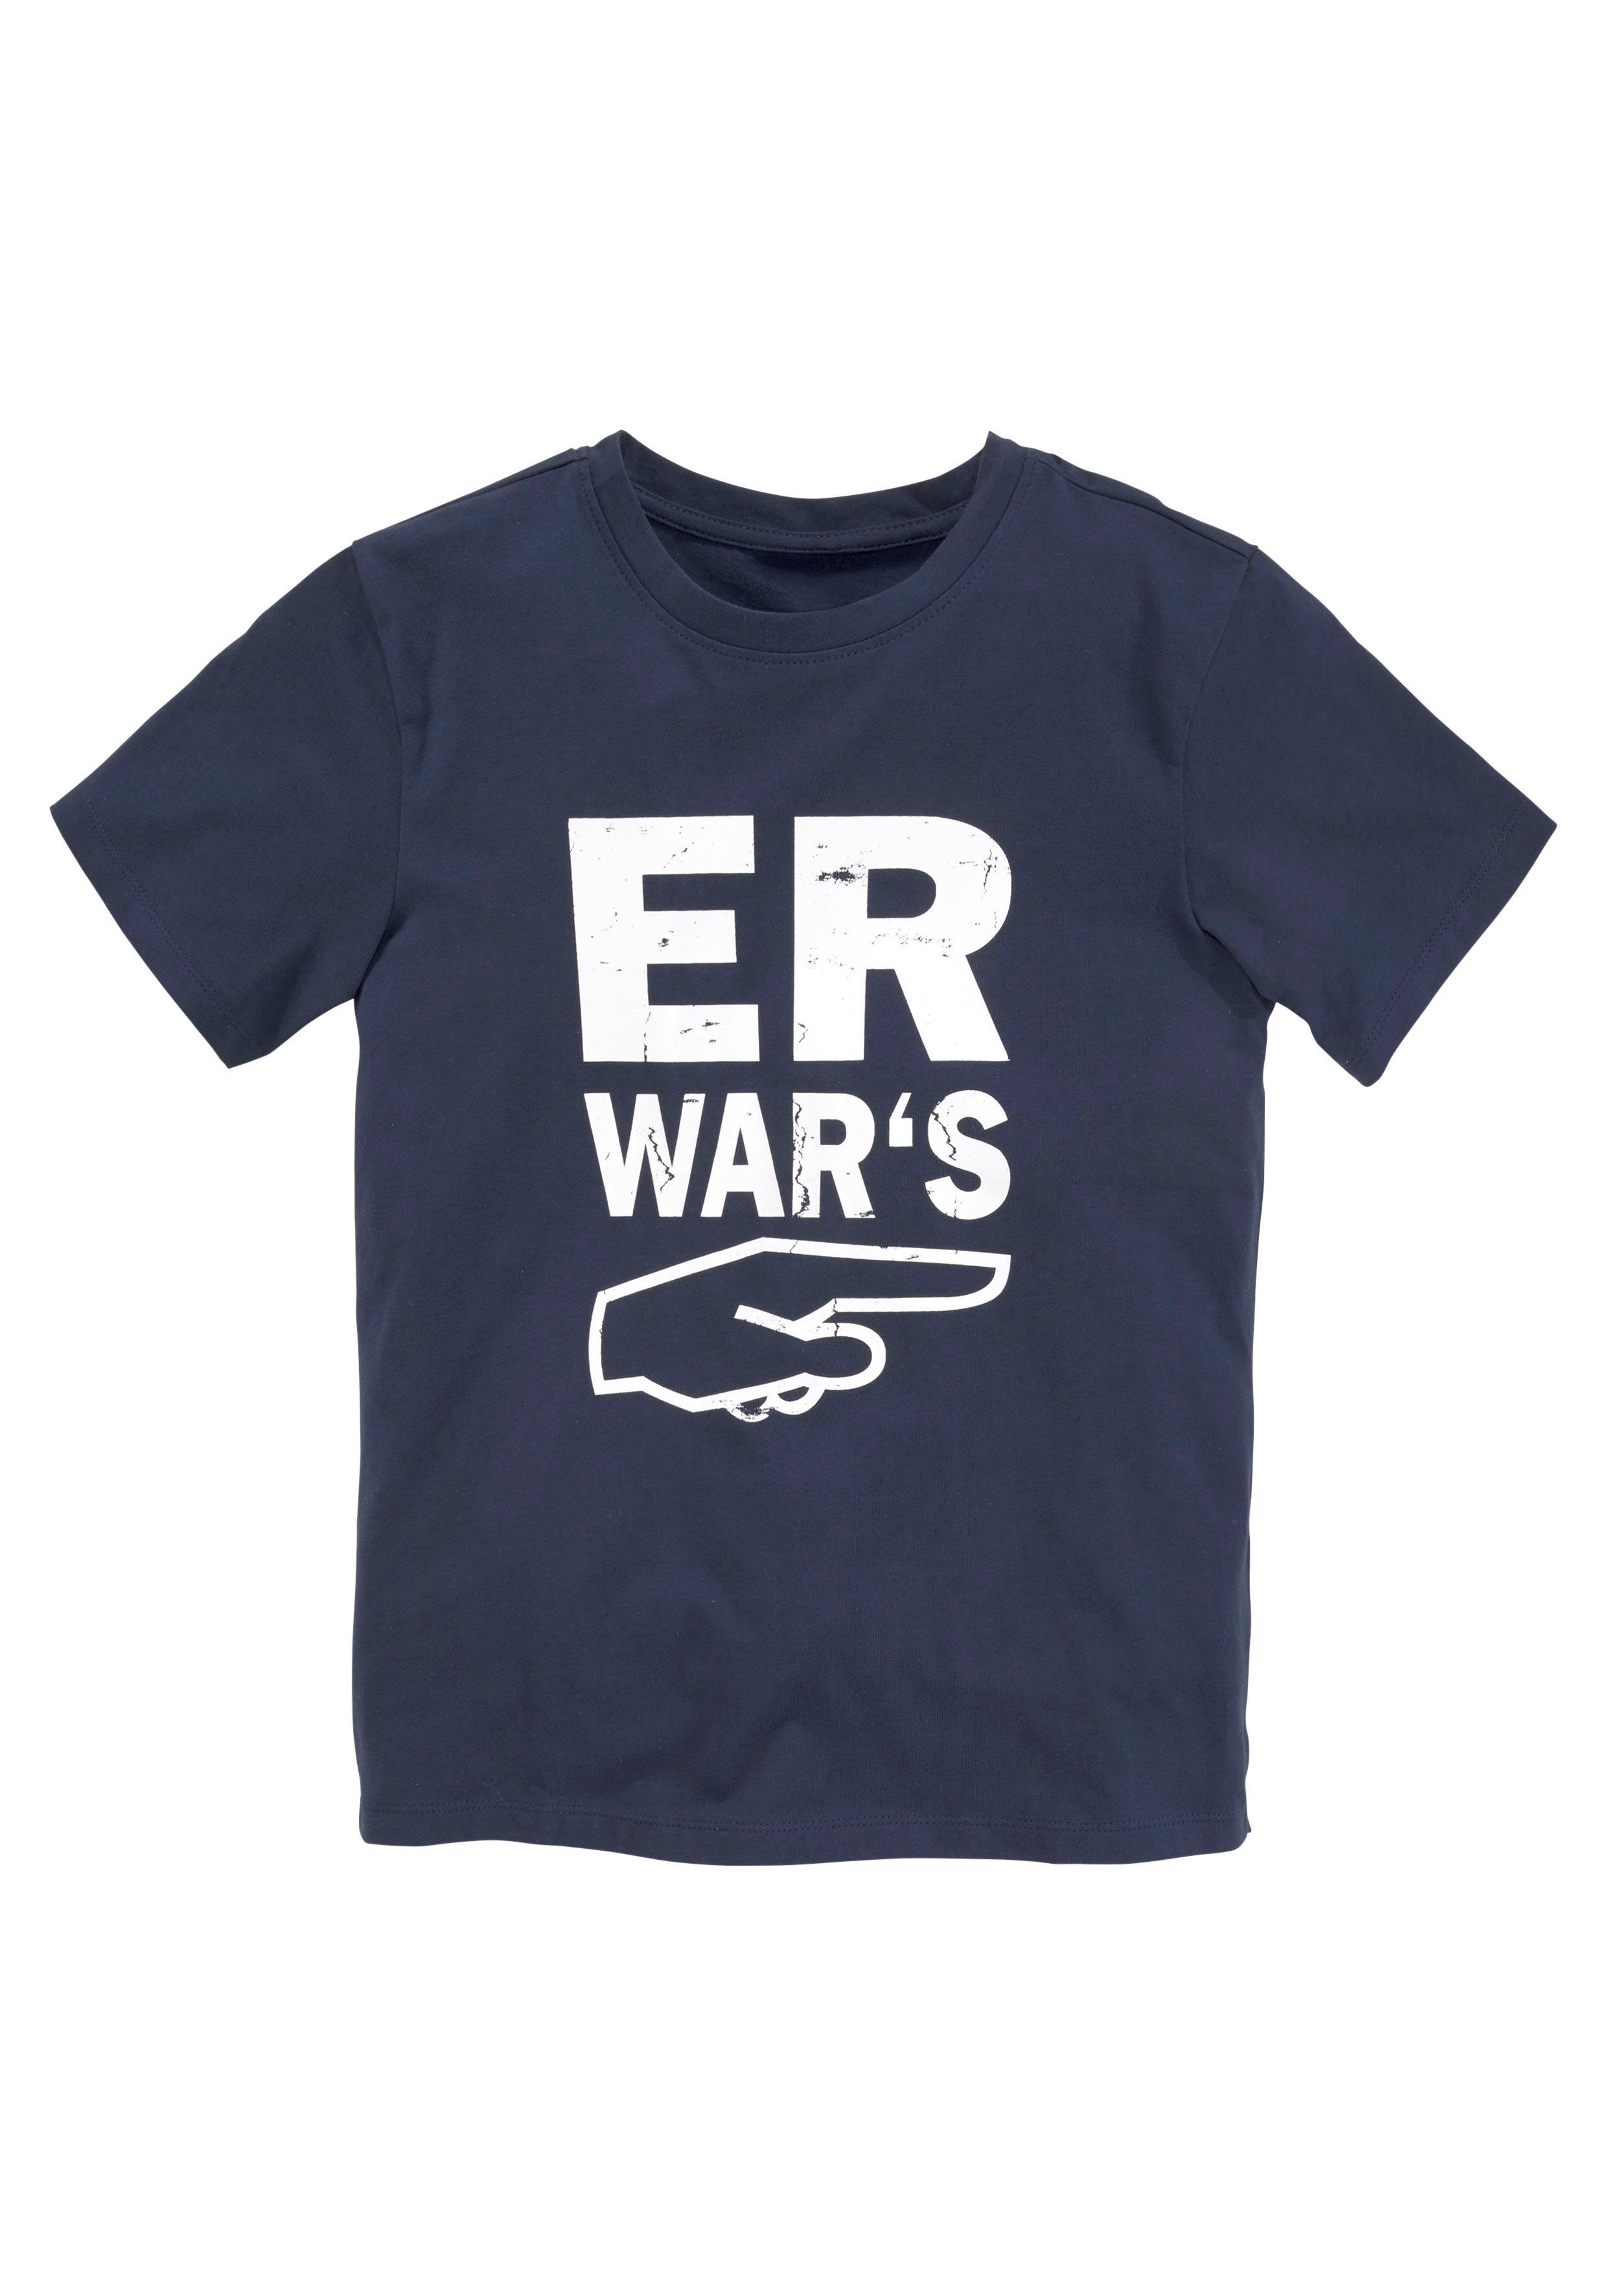 WAR`S, ER T-Shirt KIDSWORLD Spruch